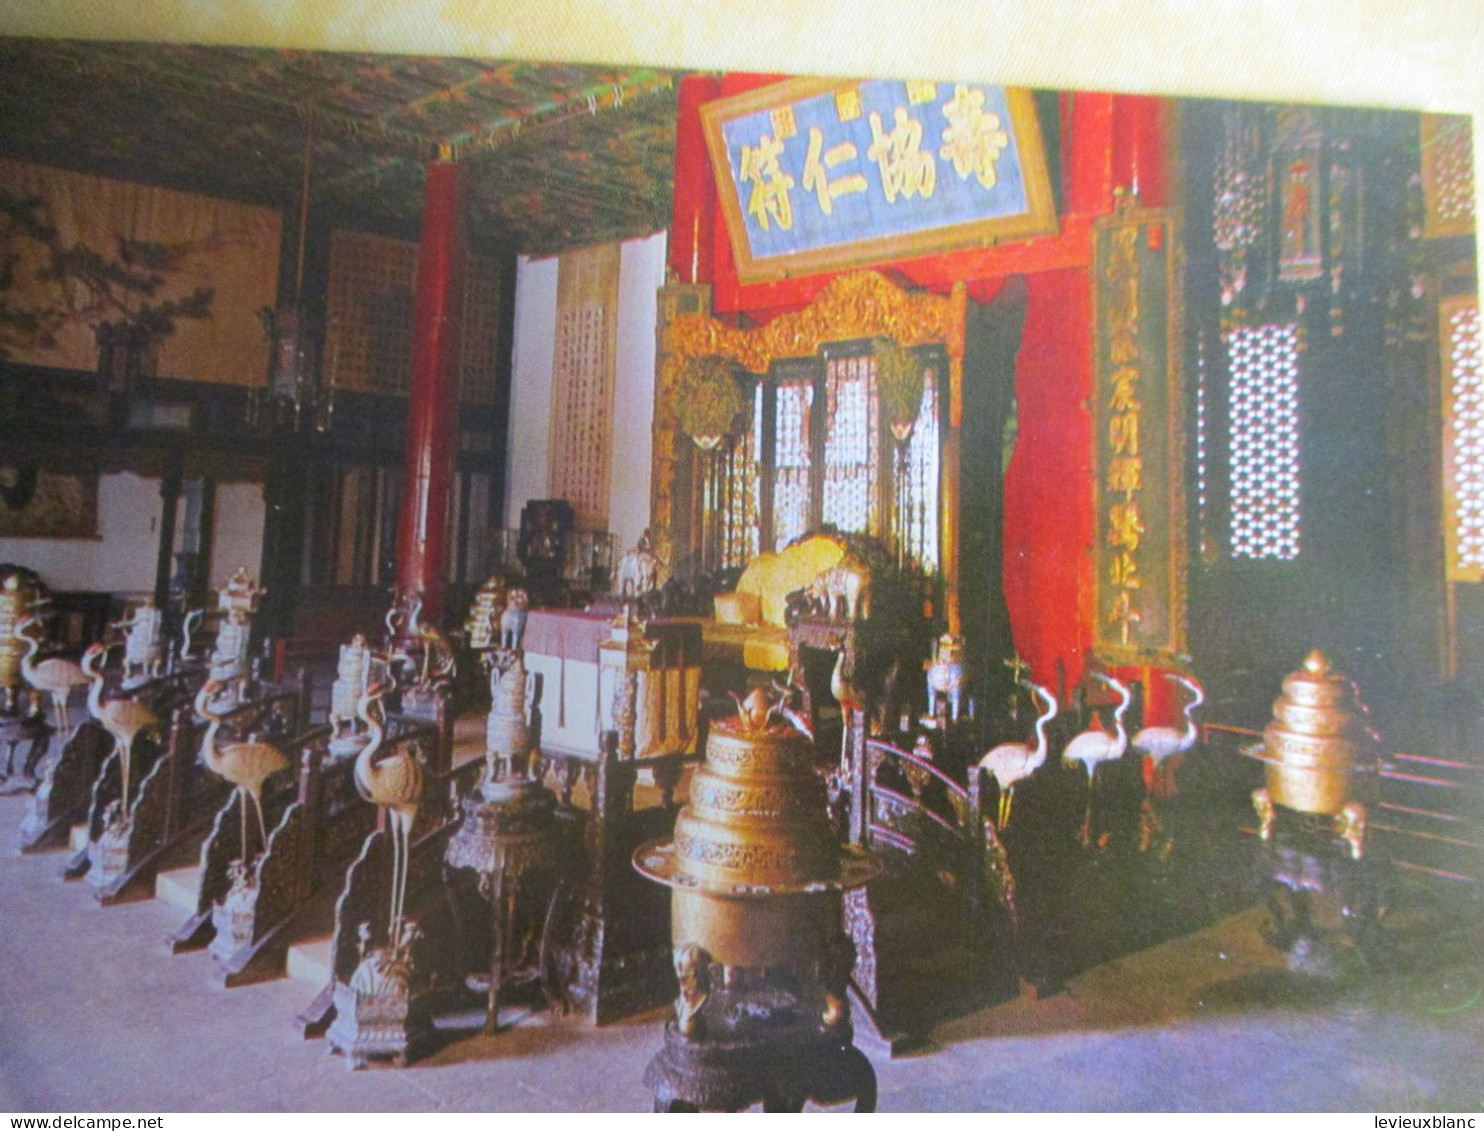 10 cartes postales anciennes/The SUMMER PALACE /Be Jing /  République Populaire de Chine / Vers 1980      JAP57